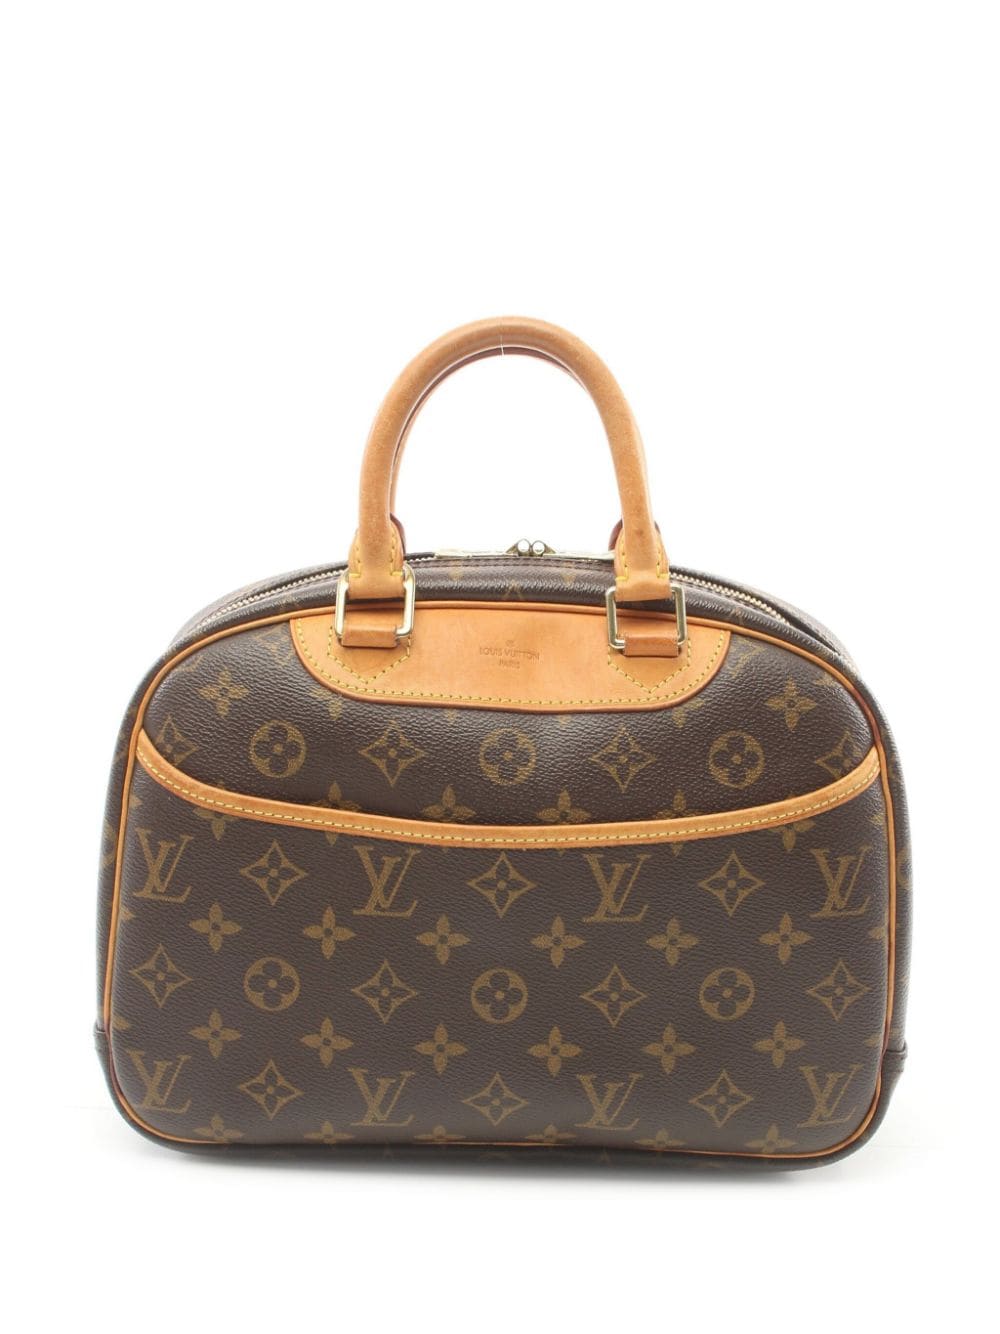 Louis Vuitton Pre-Owned 2004 Trouville handbag - Marrone